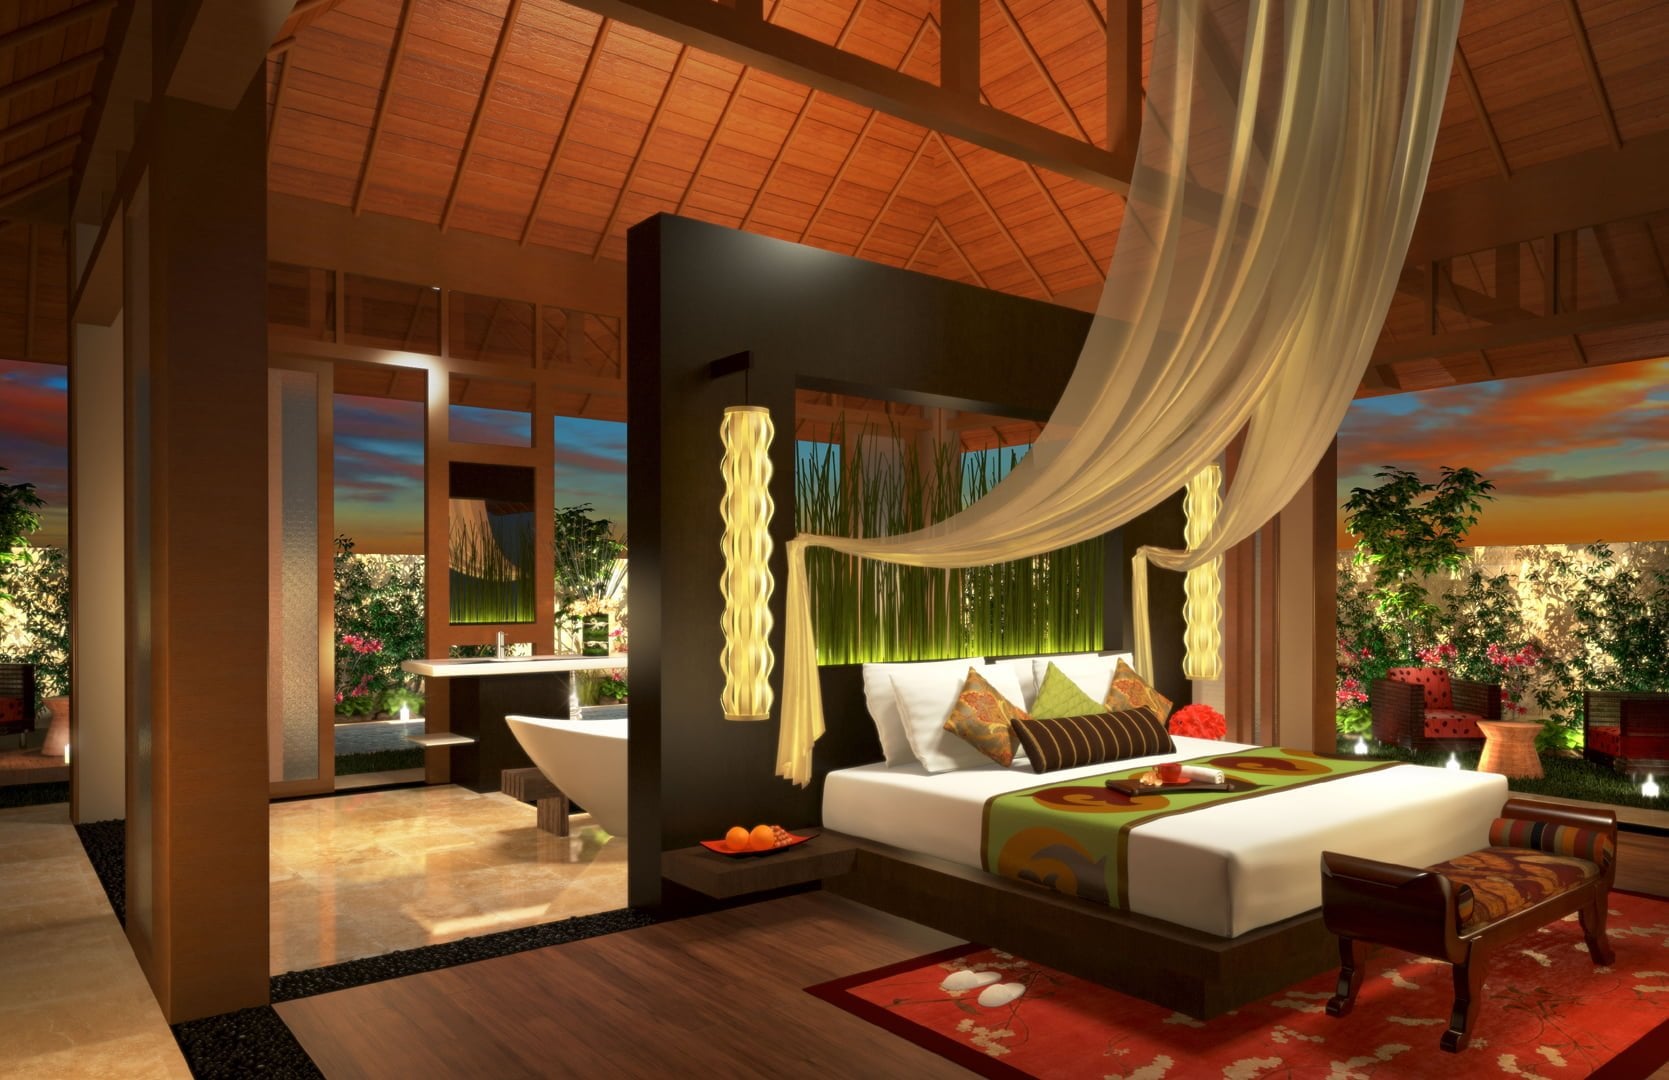 Besar Desain Interior Rumah Tradisional Bali 29 Menciptakan Perencanaan Desain Rumah oleh Desain Interior Rumah Tradisional Bali